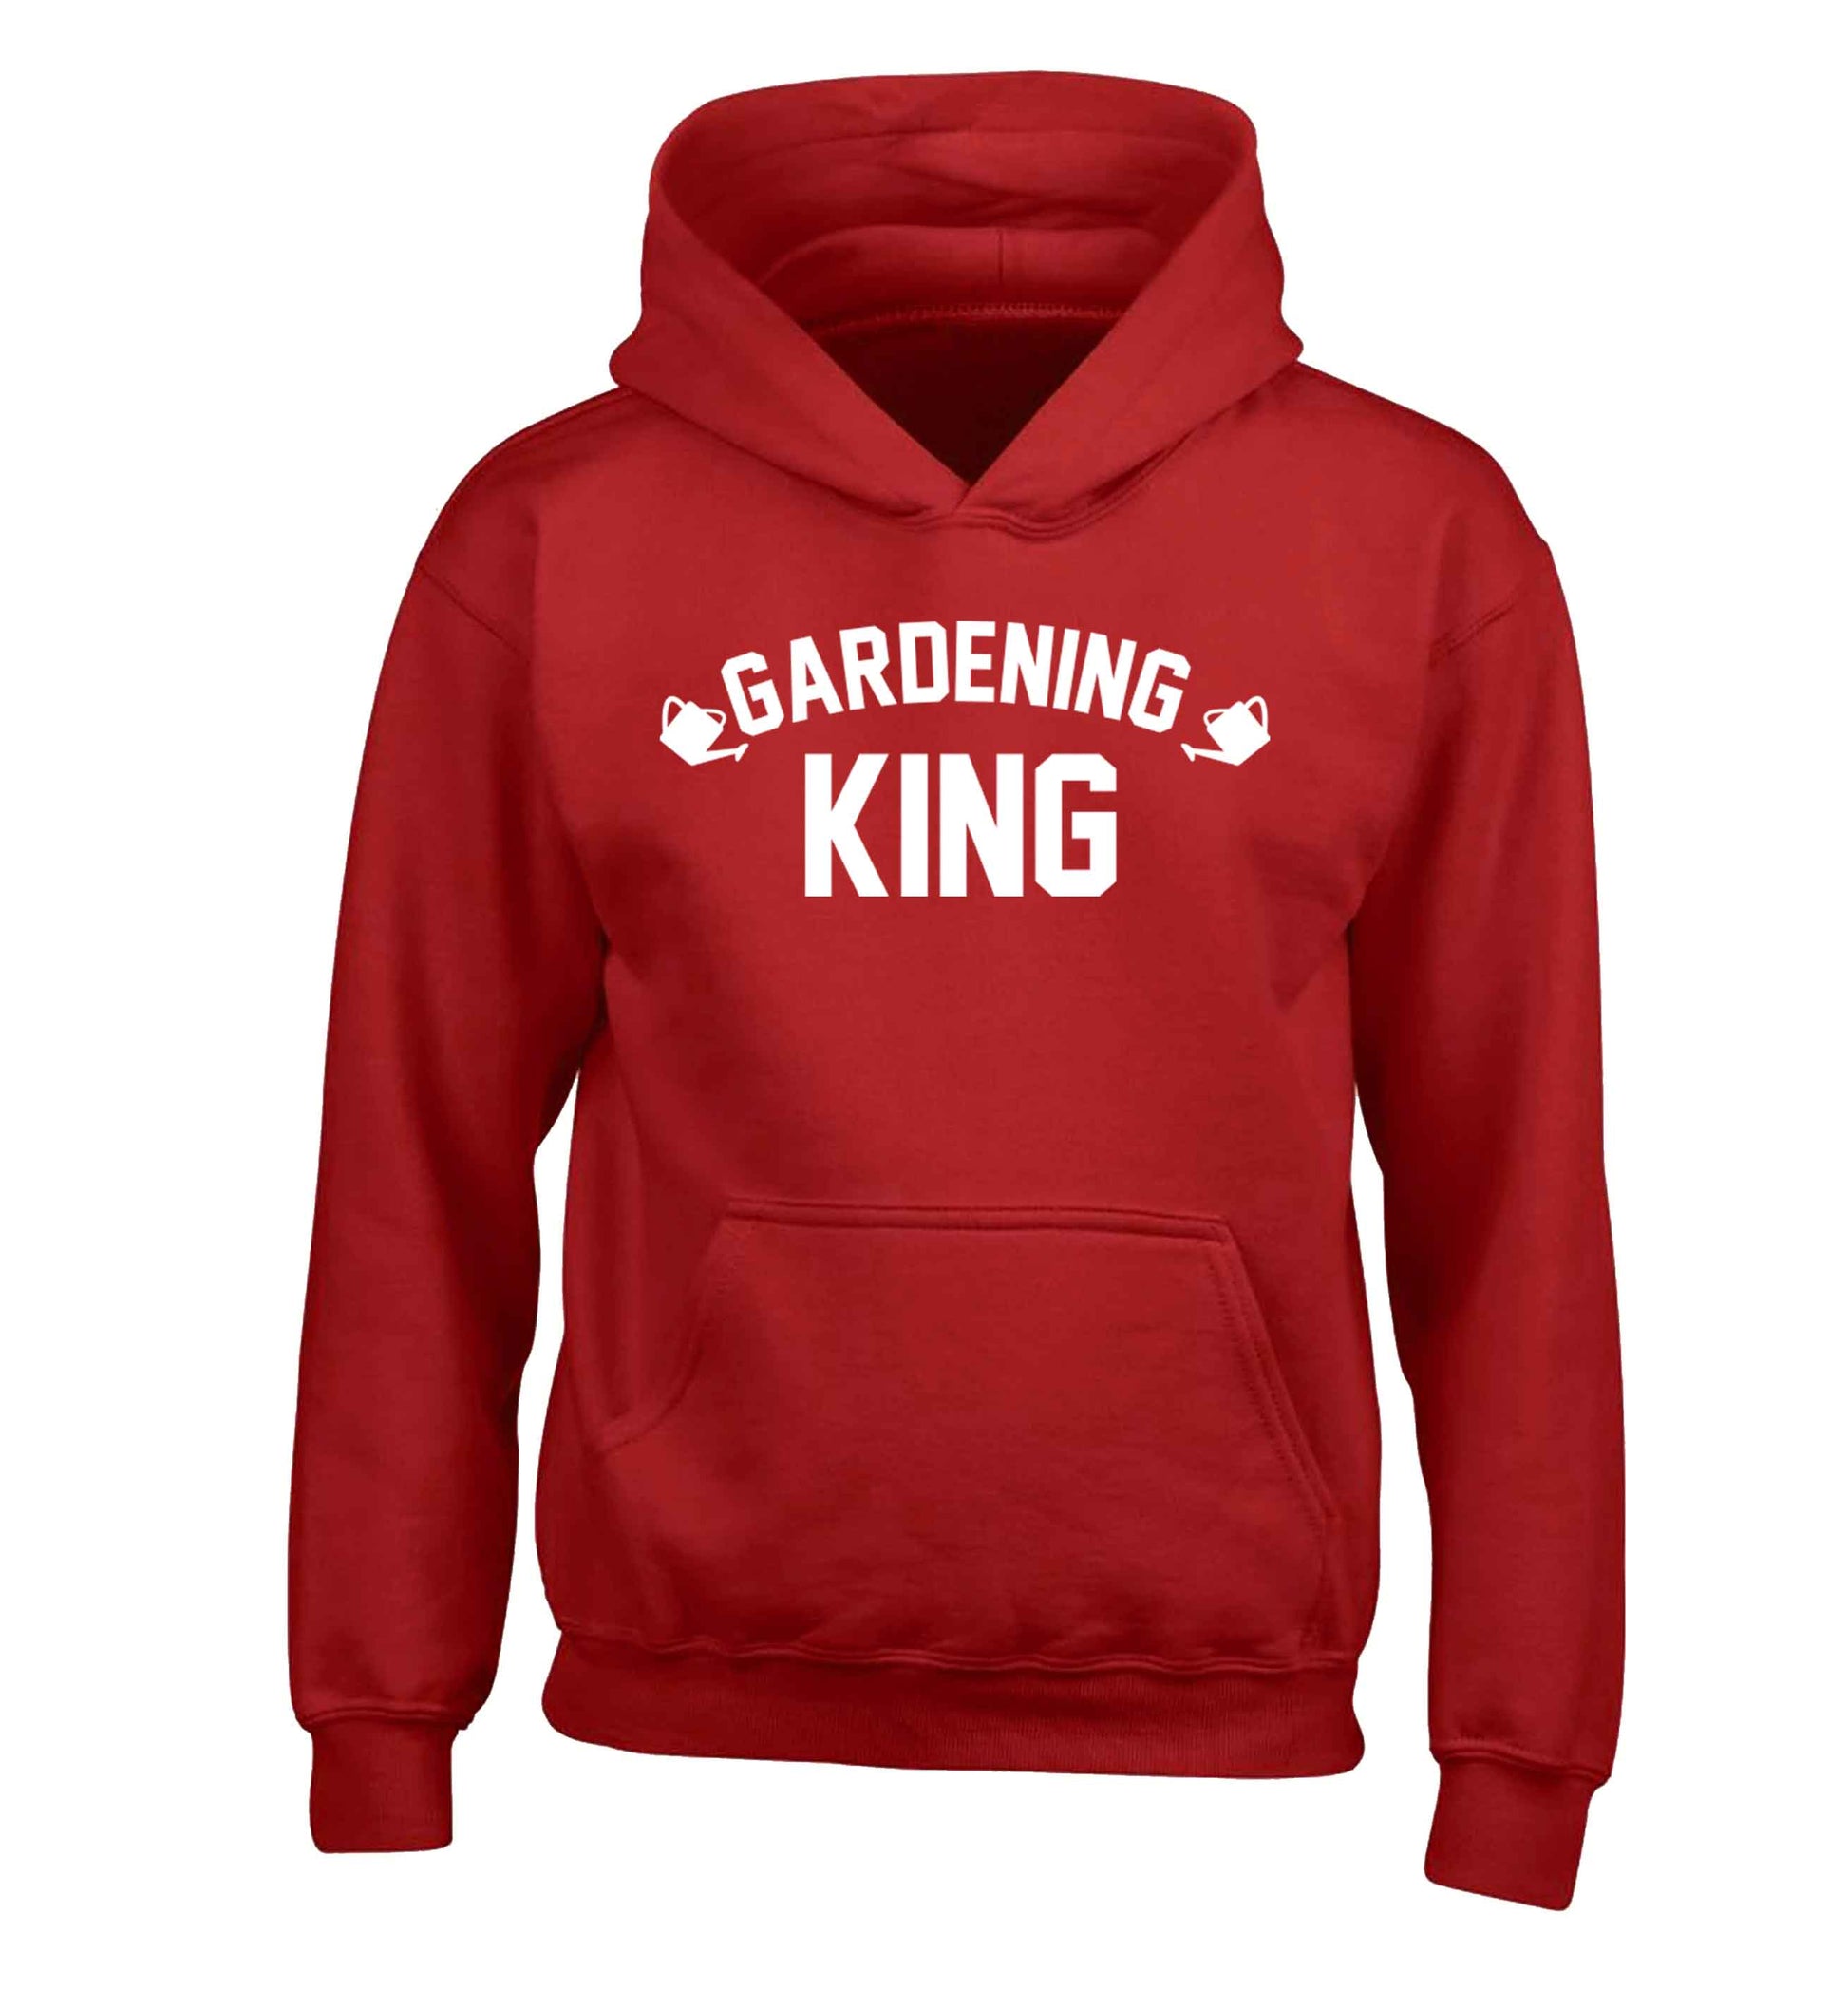 Gardening king children's red hoodie 12-13 Years